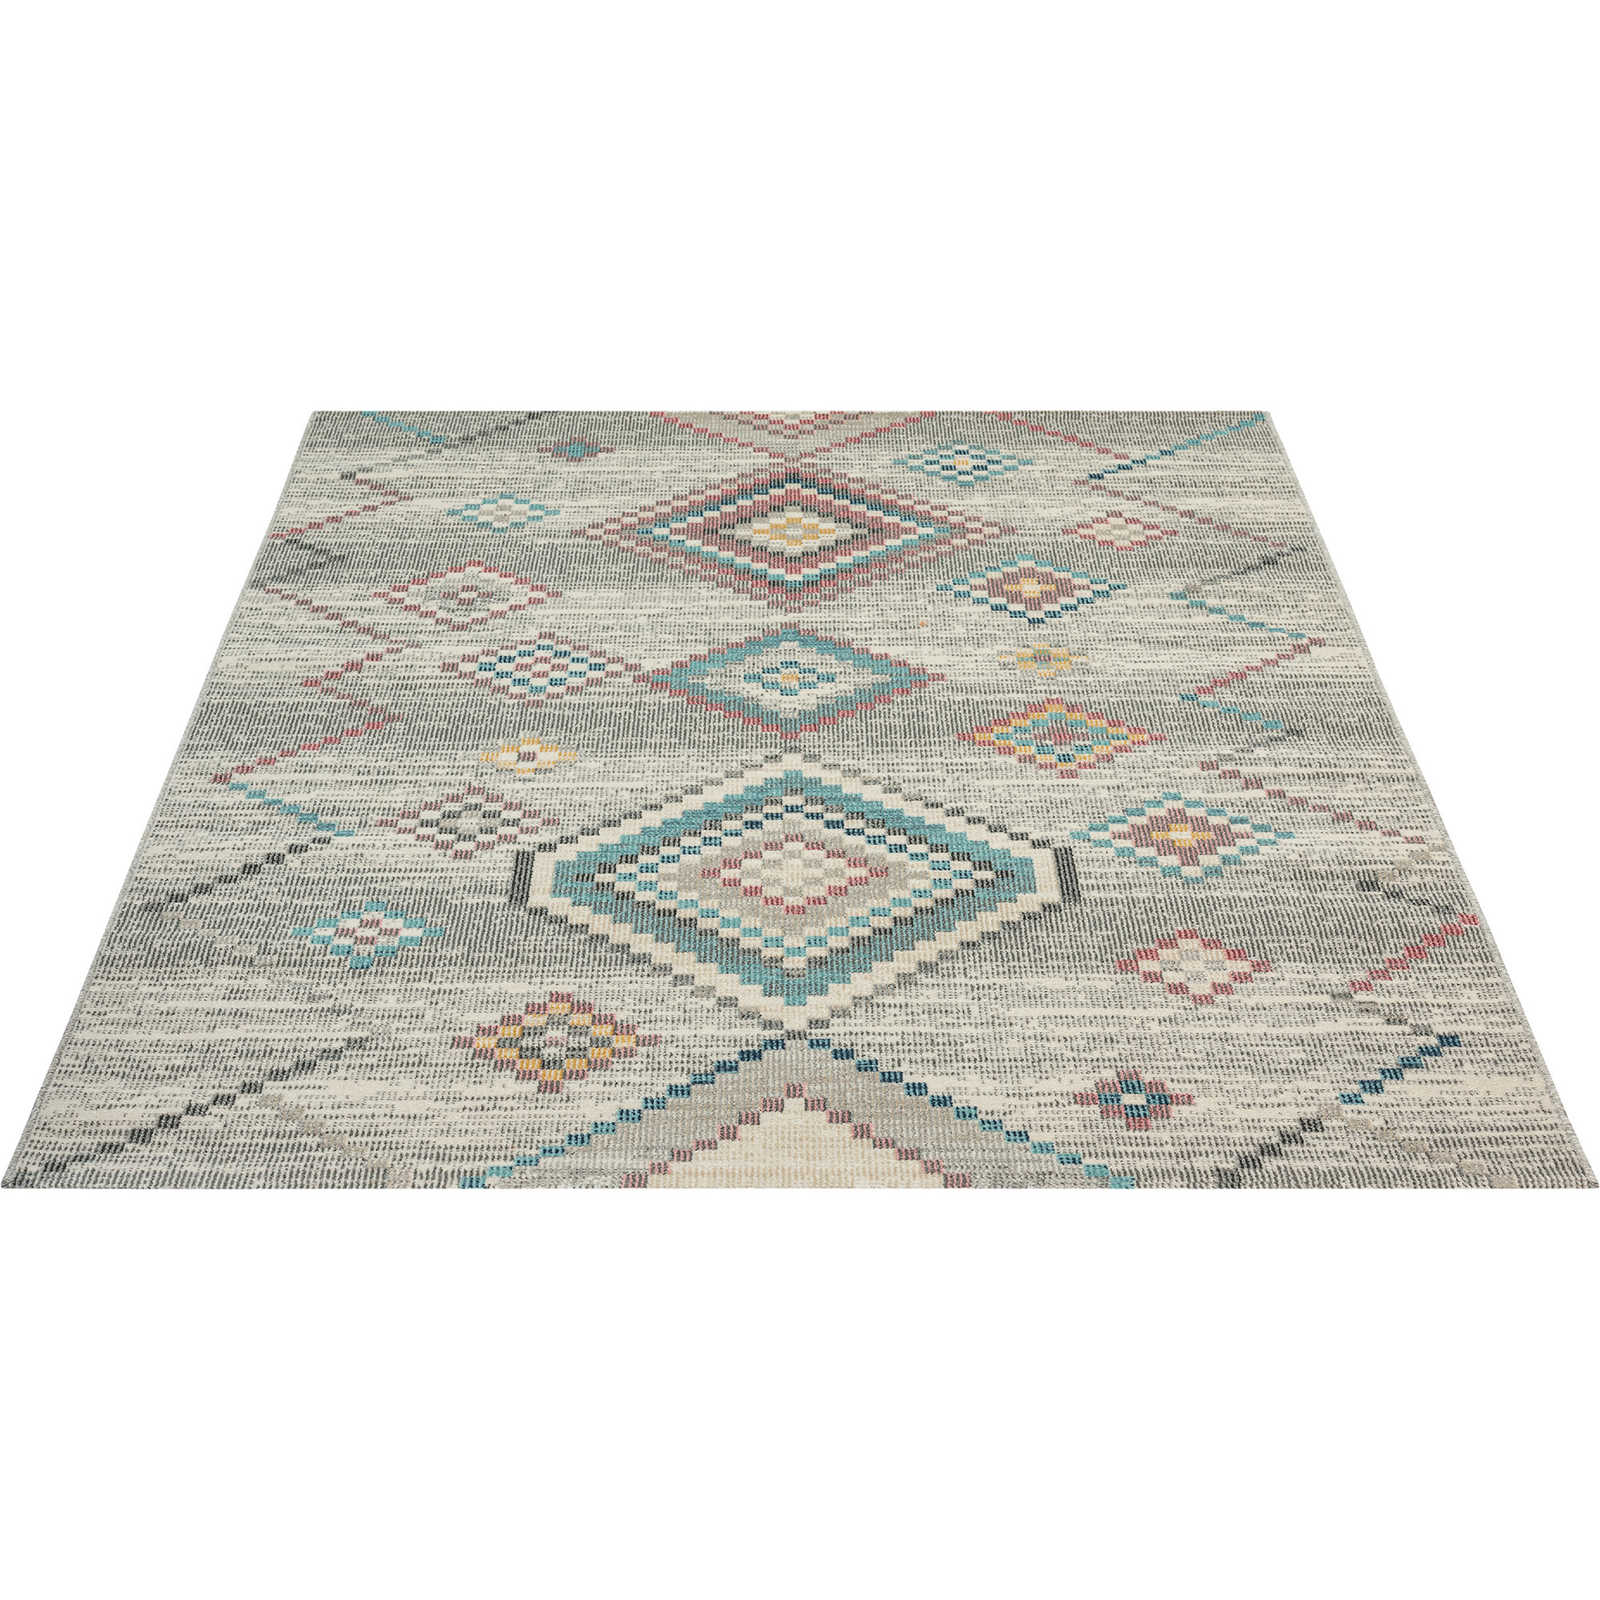 Cremefarbener Outdoor Teppich aus Flachgewebe – 340 x 240 cm
